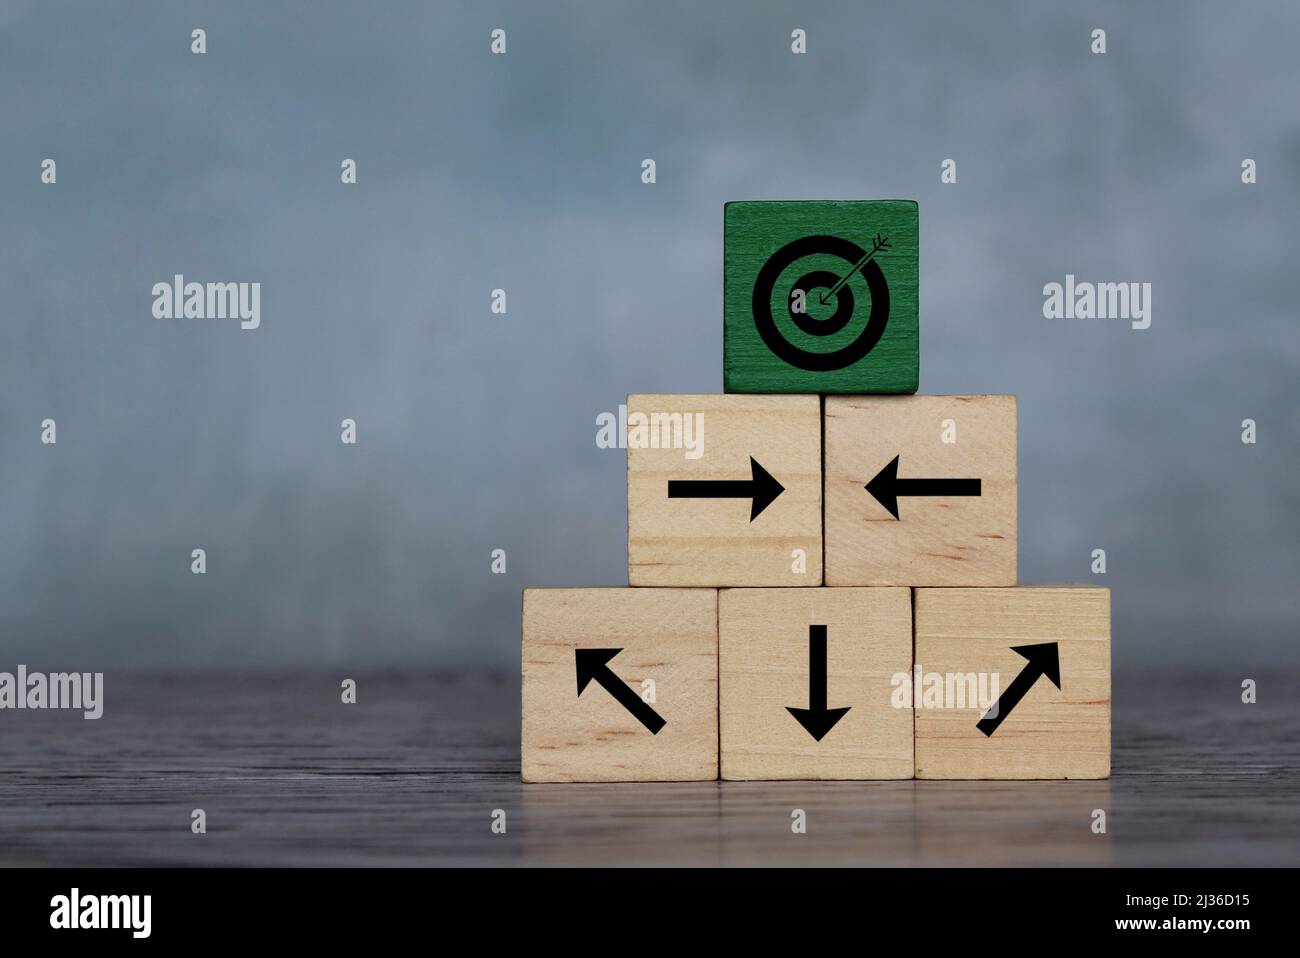 Holzwürfel mit Zielsymbol und Pfeil, der in eine andere Richtung zeigt. Organisieren Sie ein Team, setzen Sie ein Ziel. Stockfoto